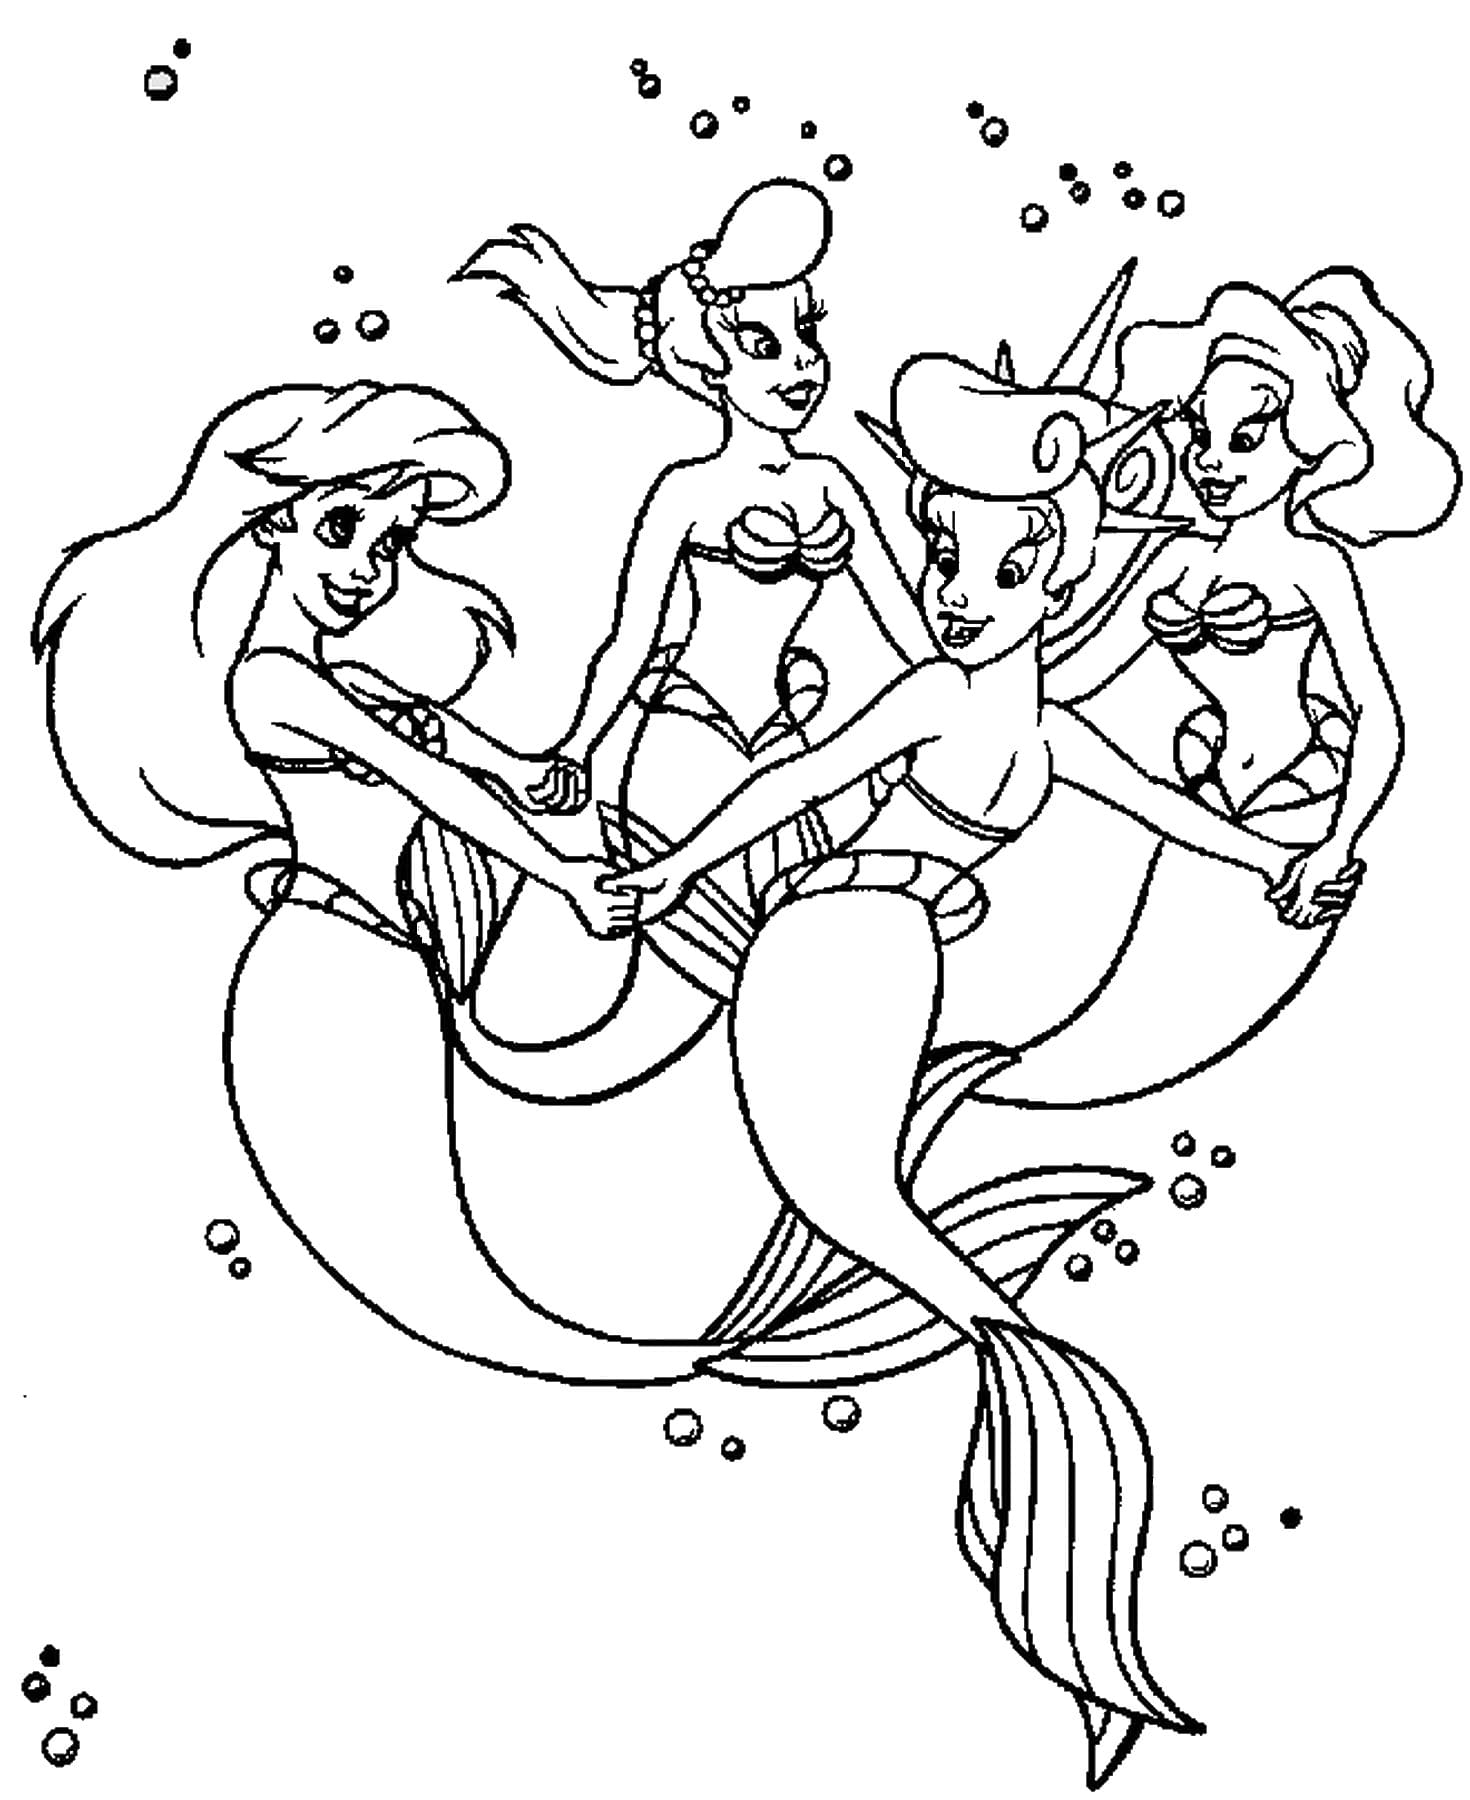 Dibujo de Ariel 37 de La sirenita para imprimir y colorear